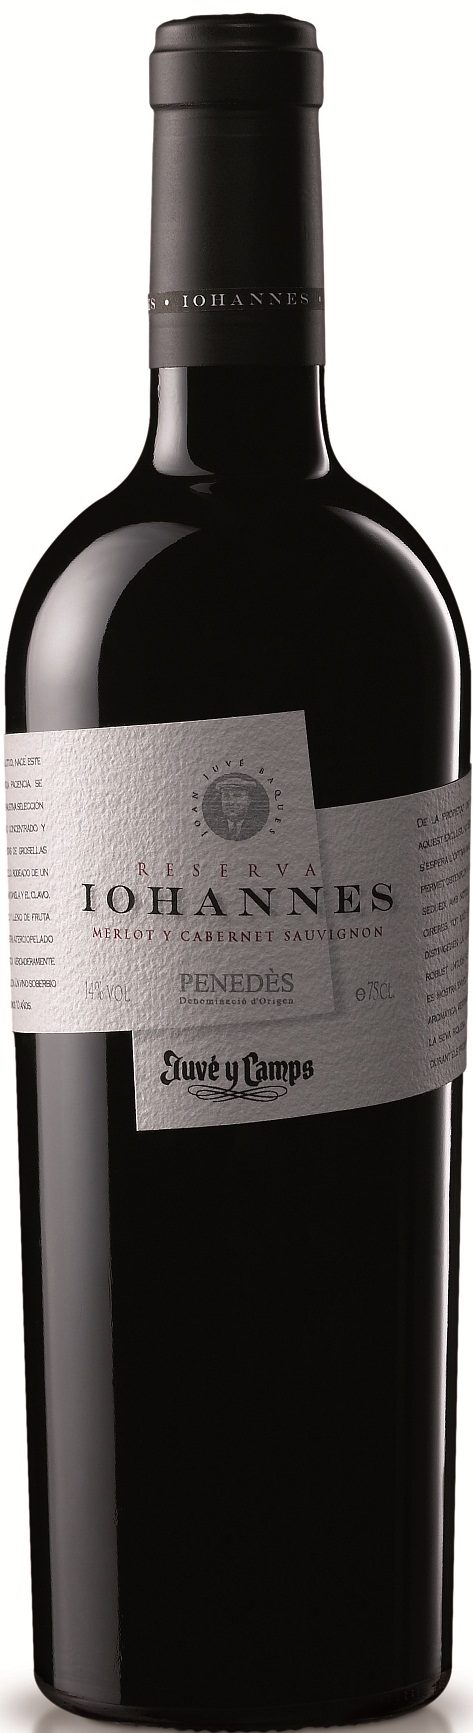 Imagen de la botella de Vino Iohannes